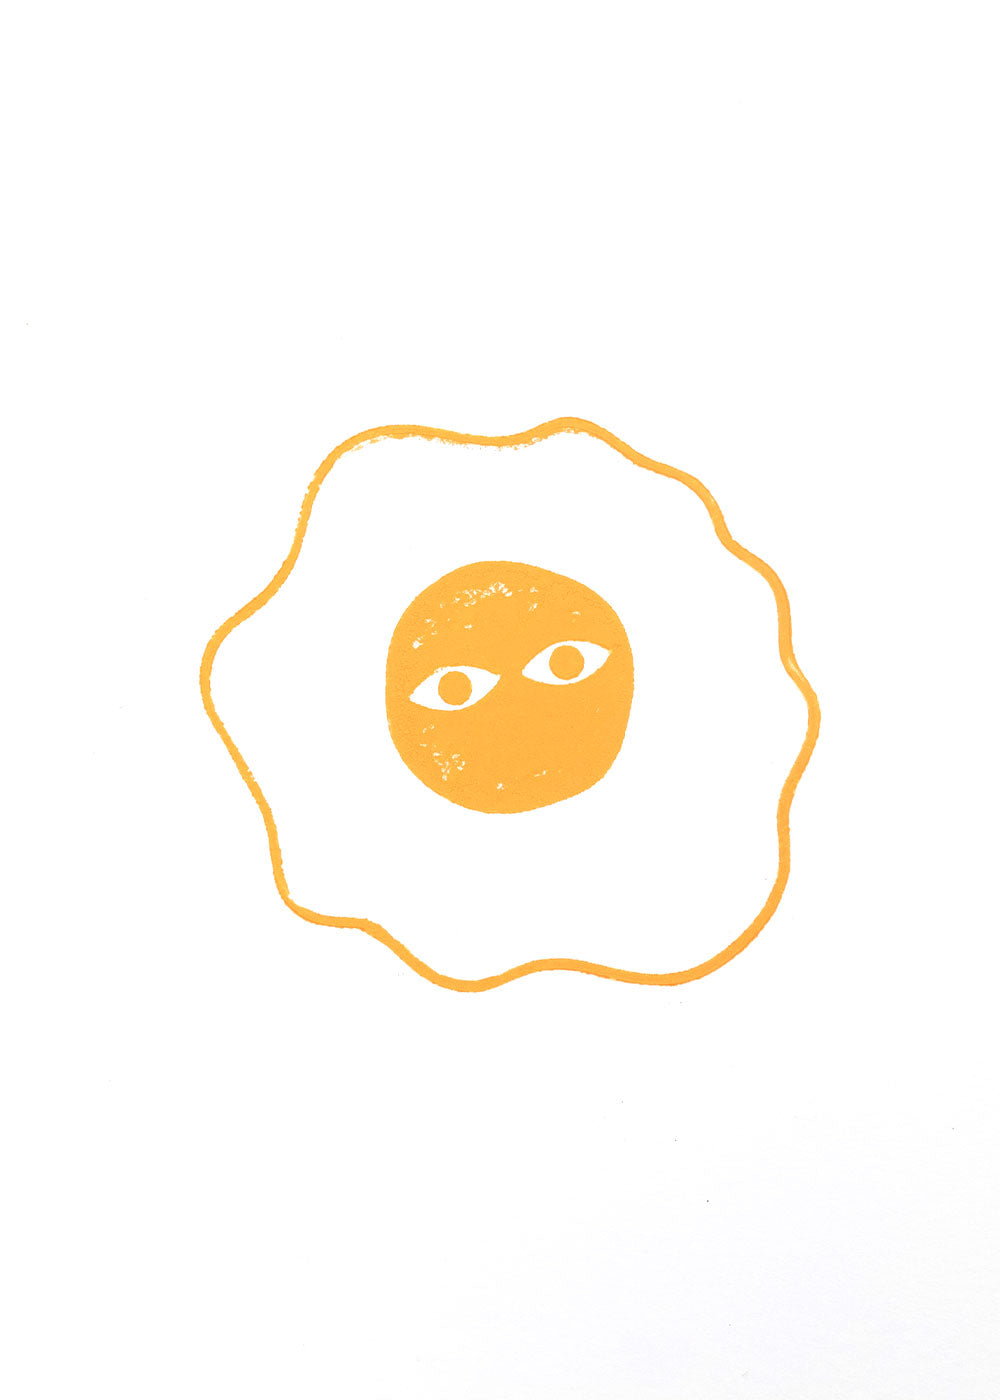 TADASHI, "Untitled" (Egg)